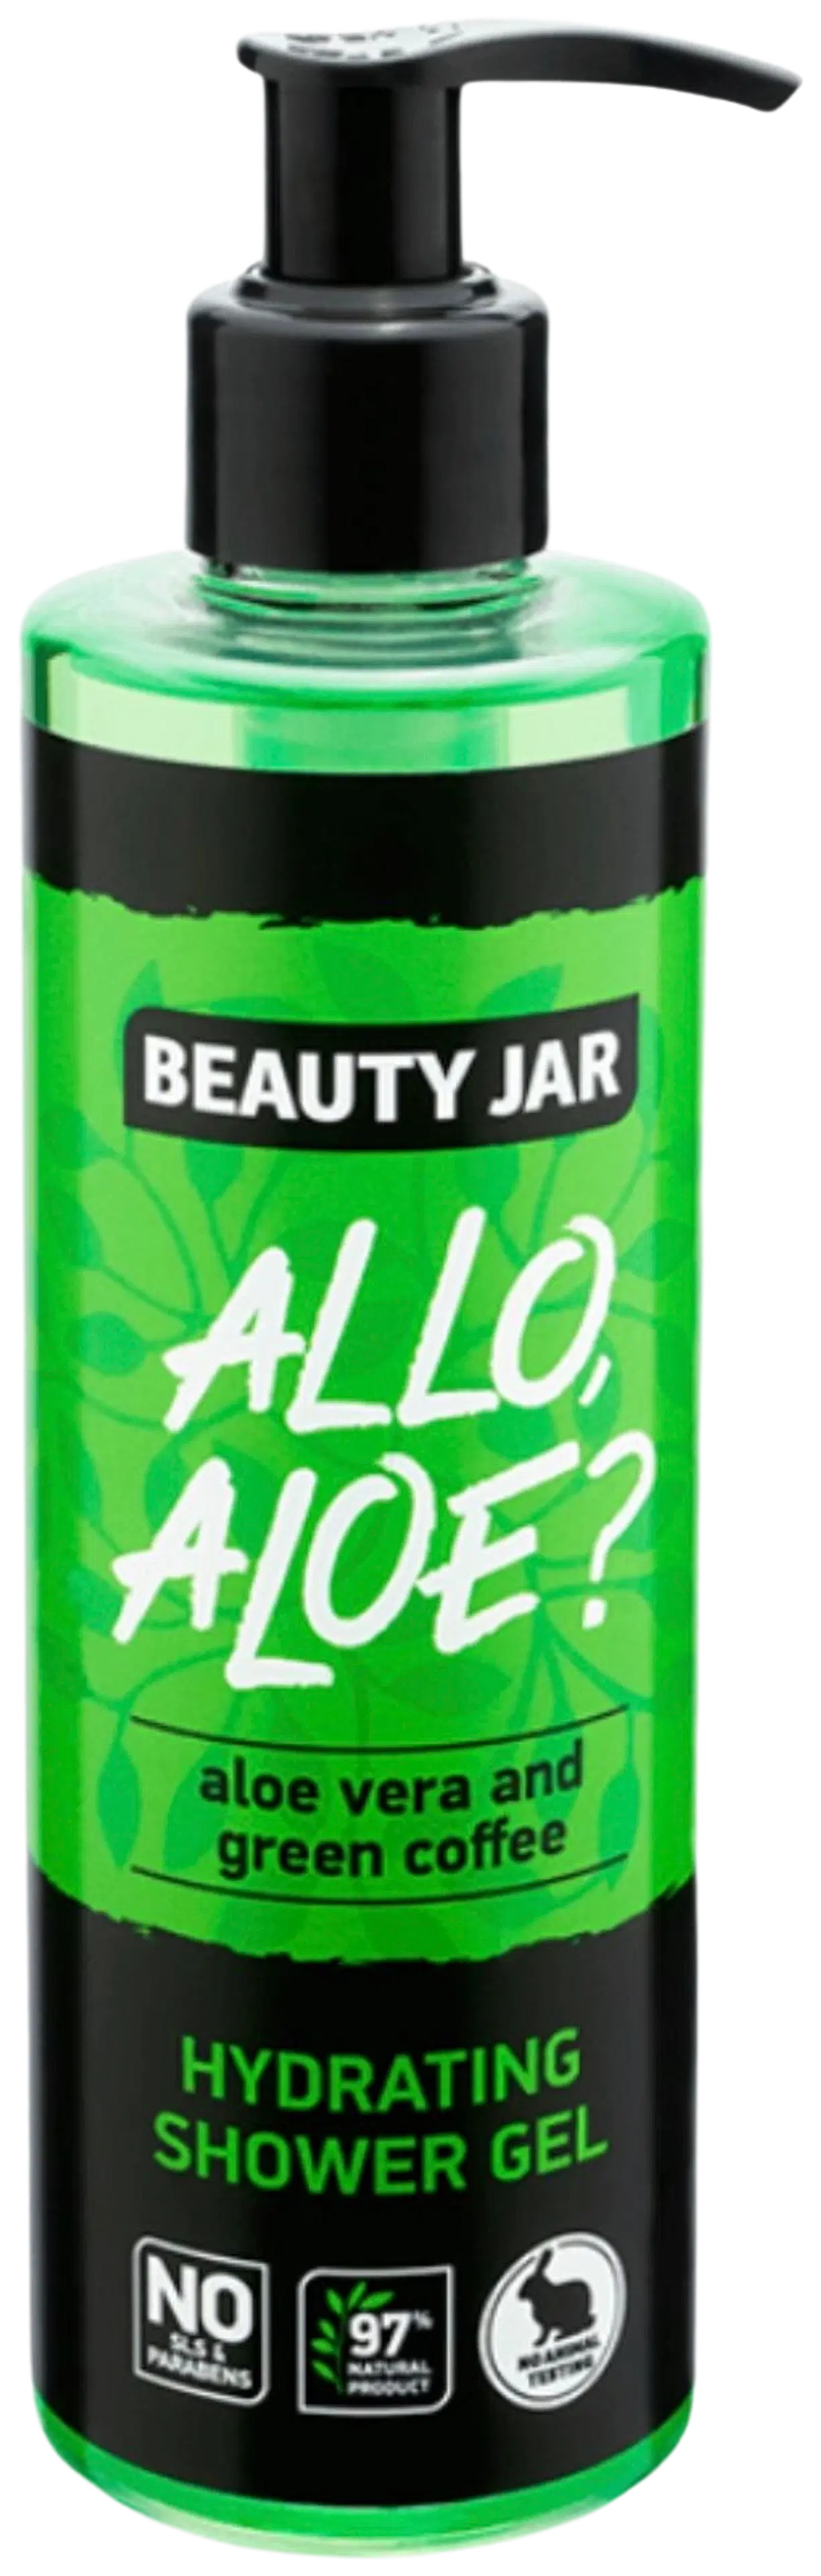 Beauty Jar Allo, Aloe? Shower Gel suihkugeeli 250 ml